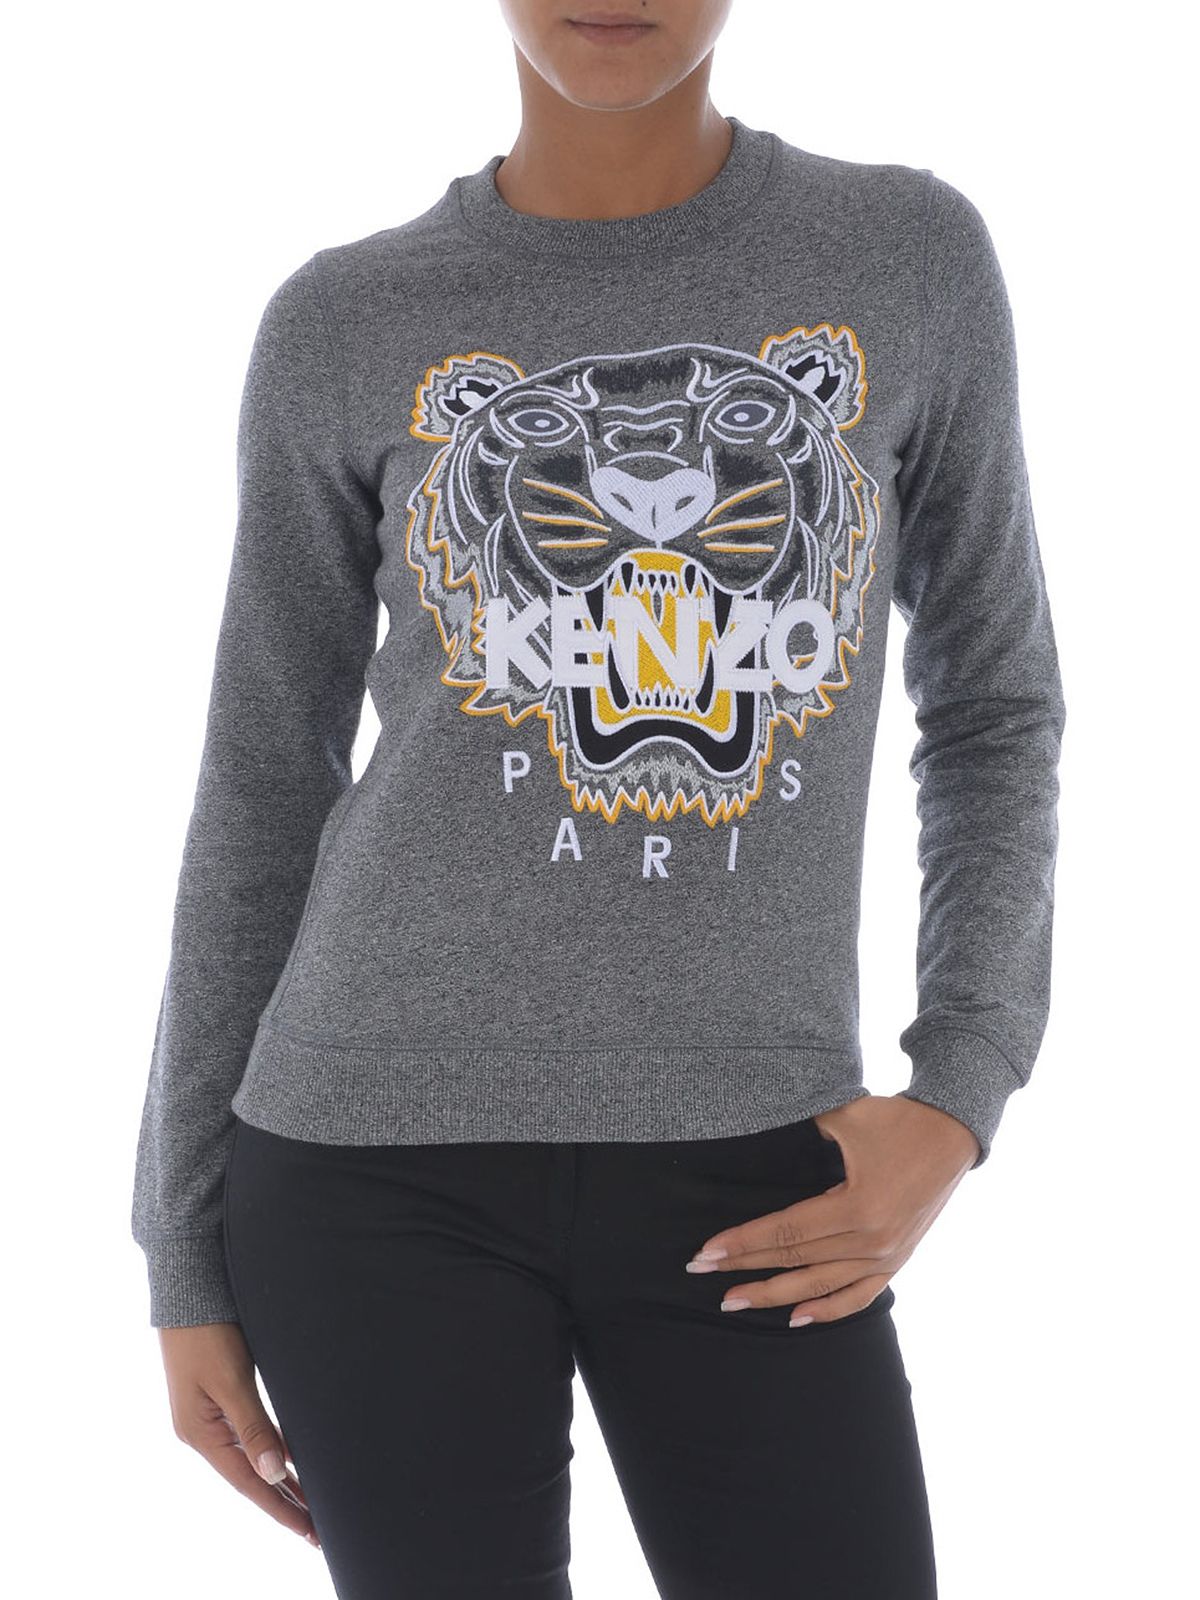 industrie rijstwijn hebben zich vergist Sweatshirts & Sweaters Kenzo - Iconic Tiger cotton sweatshirt -  F762SW7054XC98